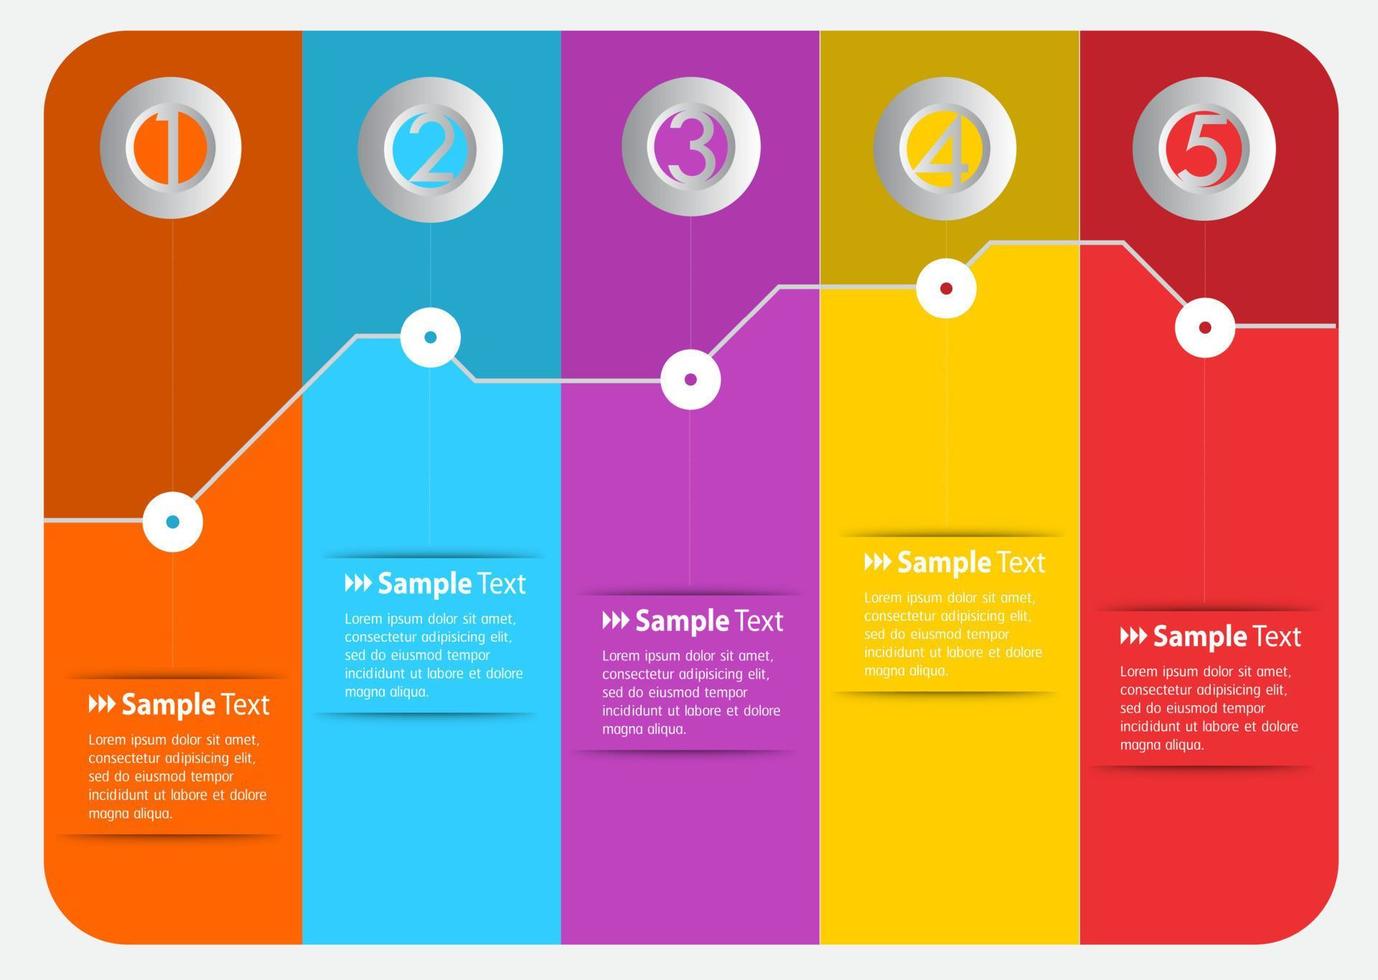 kleurrijke 5-stappen infographic vector